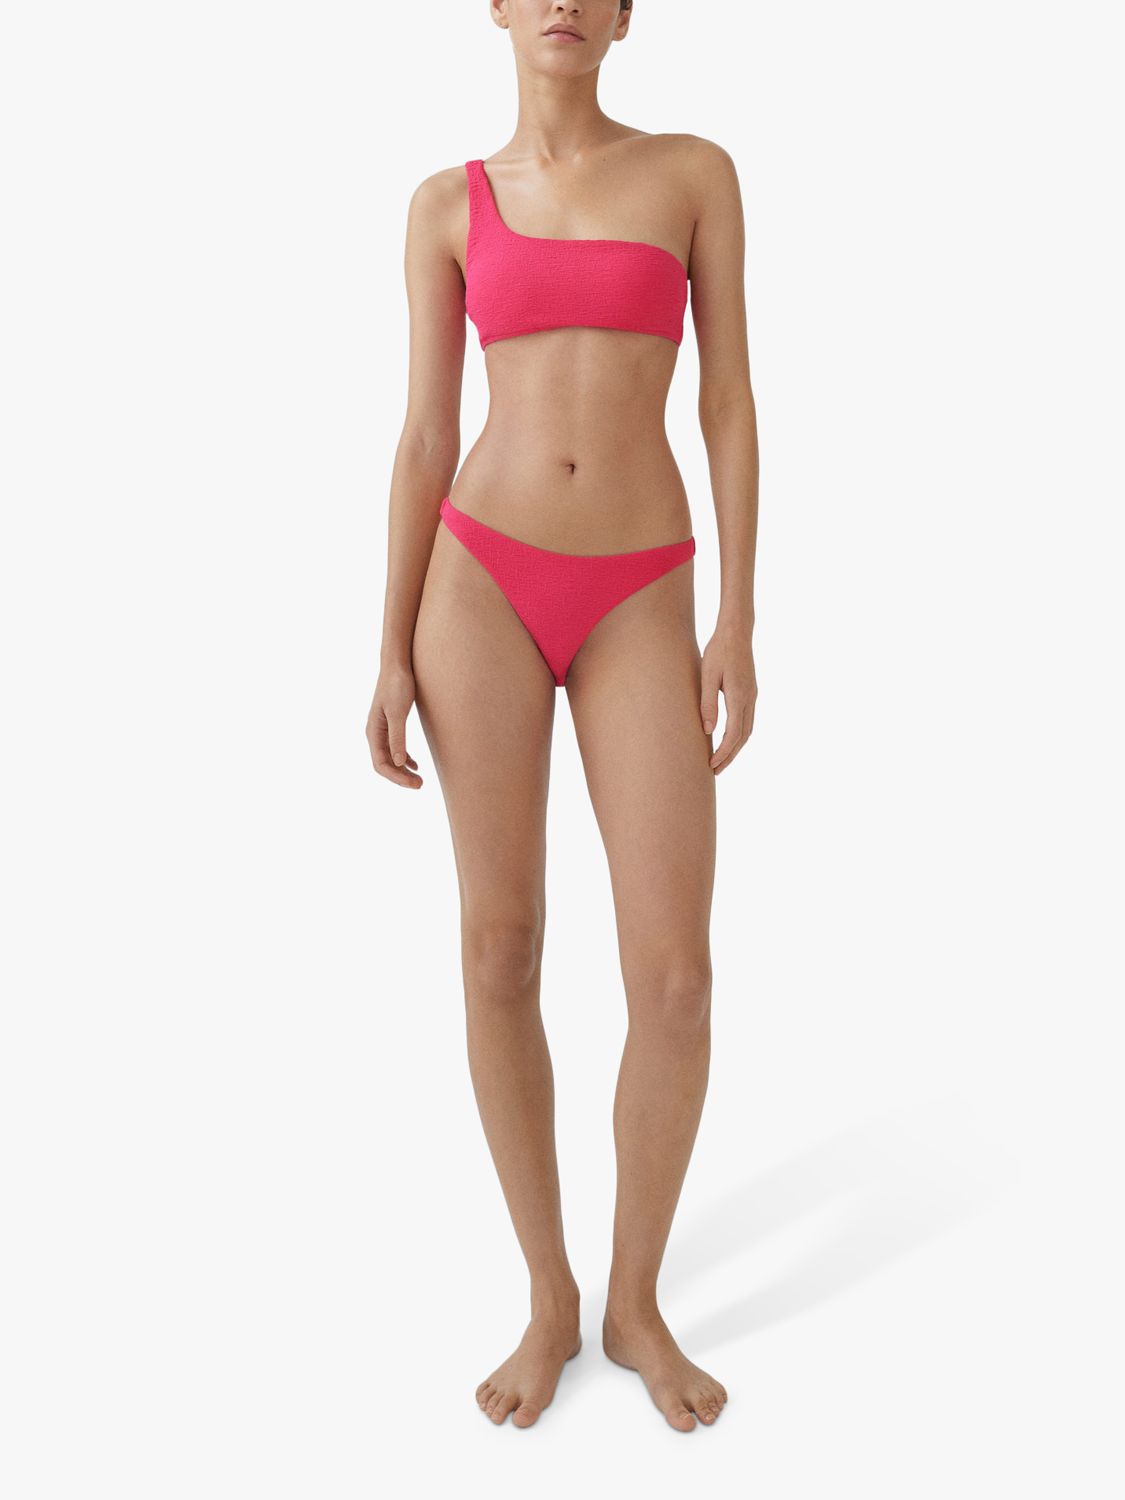 Mango Bini Textured Bikini Bottoms, Bright Pink, L